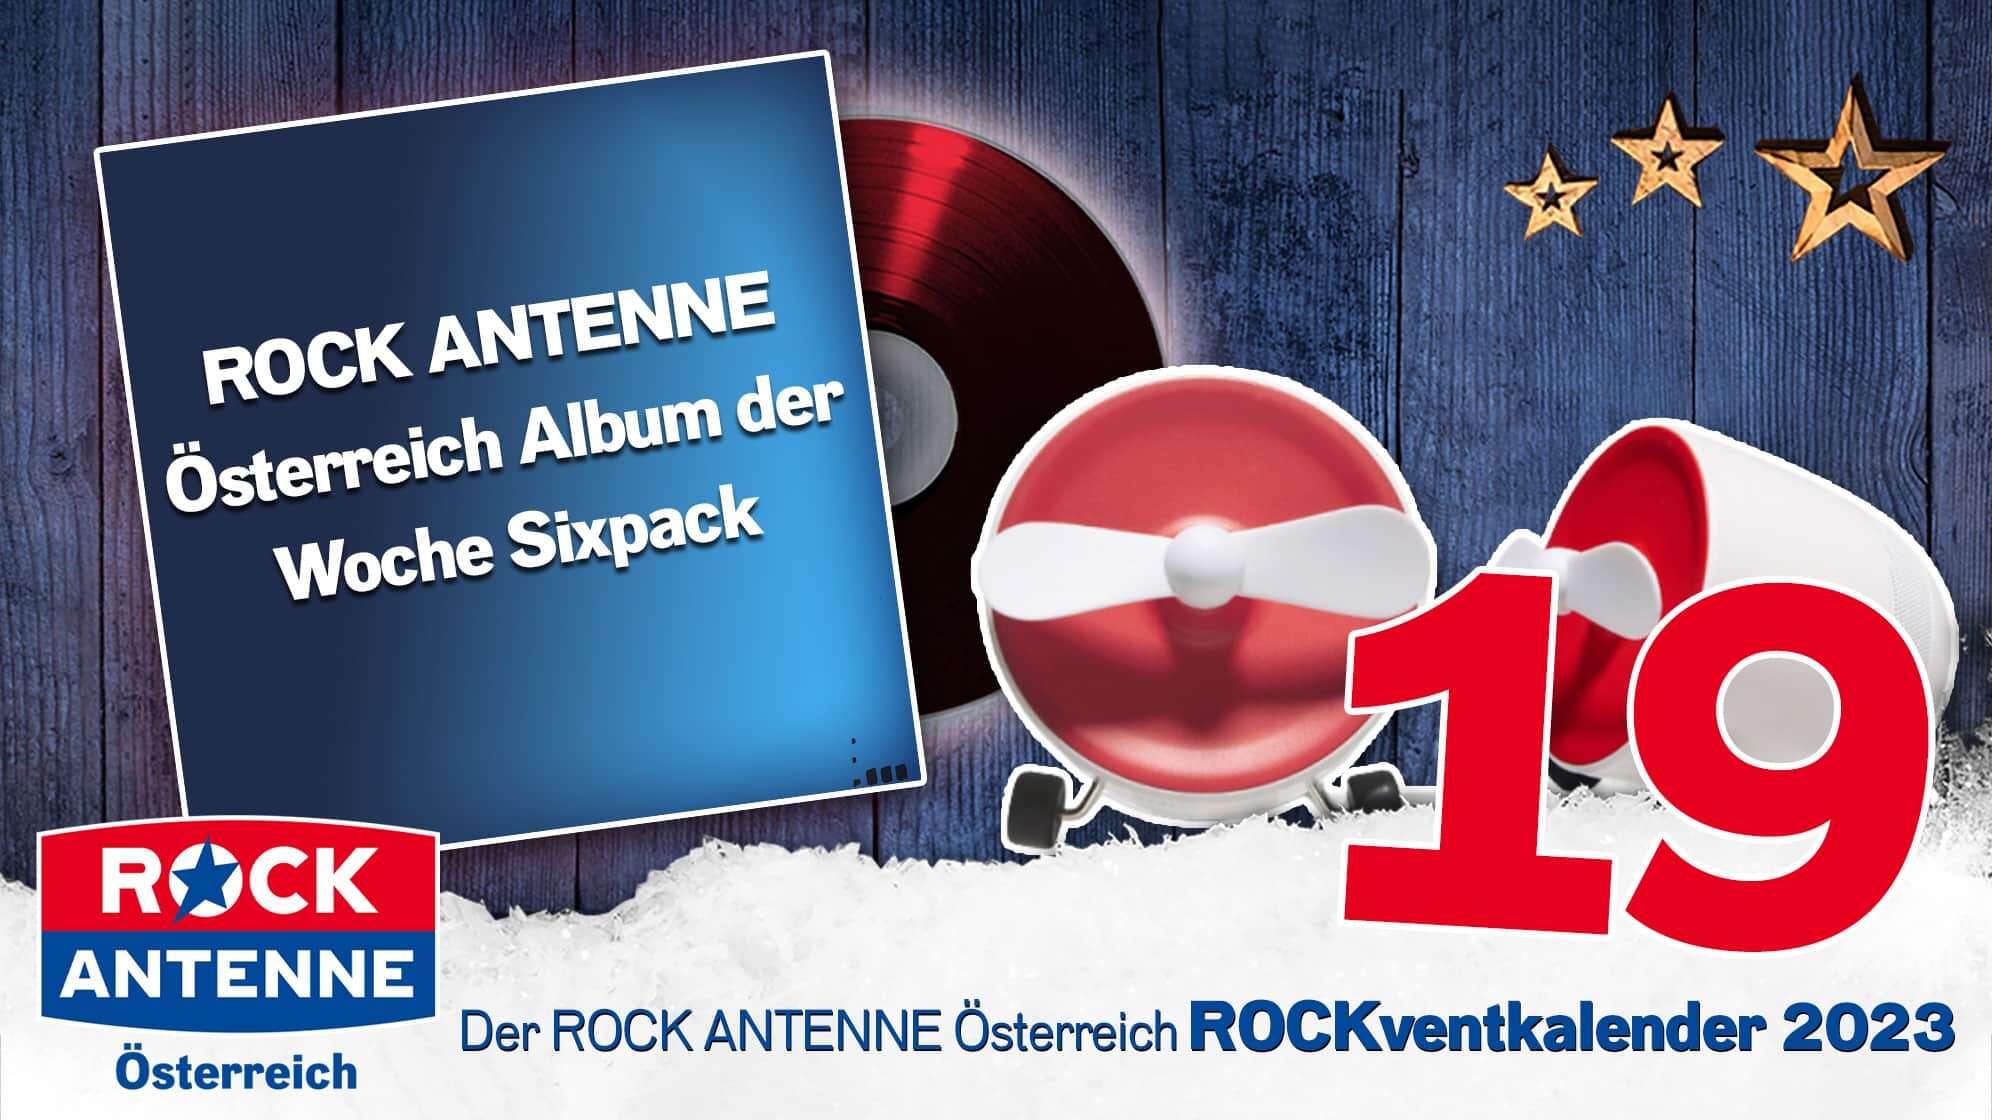 ROCK ANTENNE Österreich ROCKventskalender Türchen 19: Album der Woche 2023 Sixpack  und NABO Sound One Wireless Streaming Lautsprecher in rot